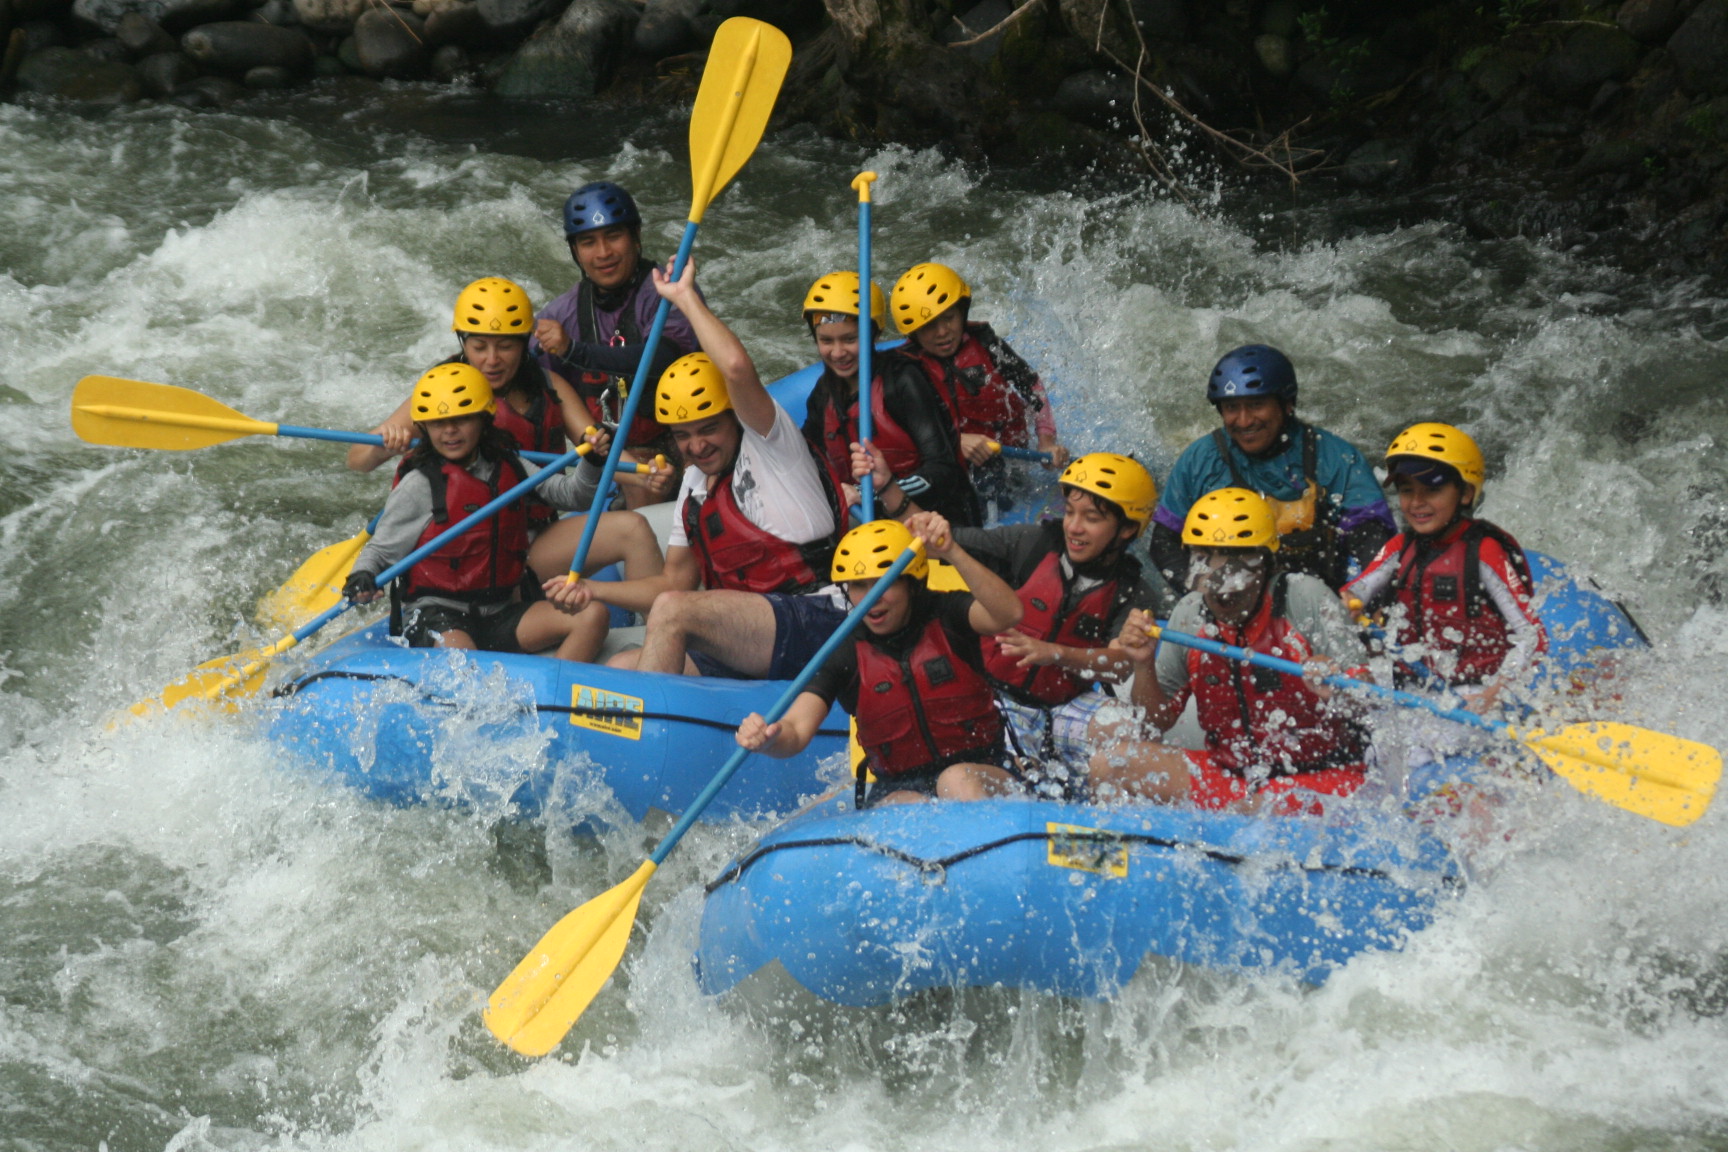 Se espera aumento en 30% de visitantes en turismo de aventura en la región de Xalapa